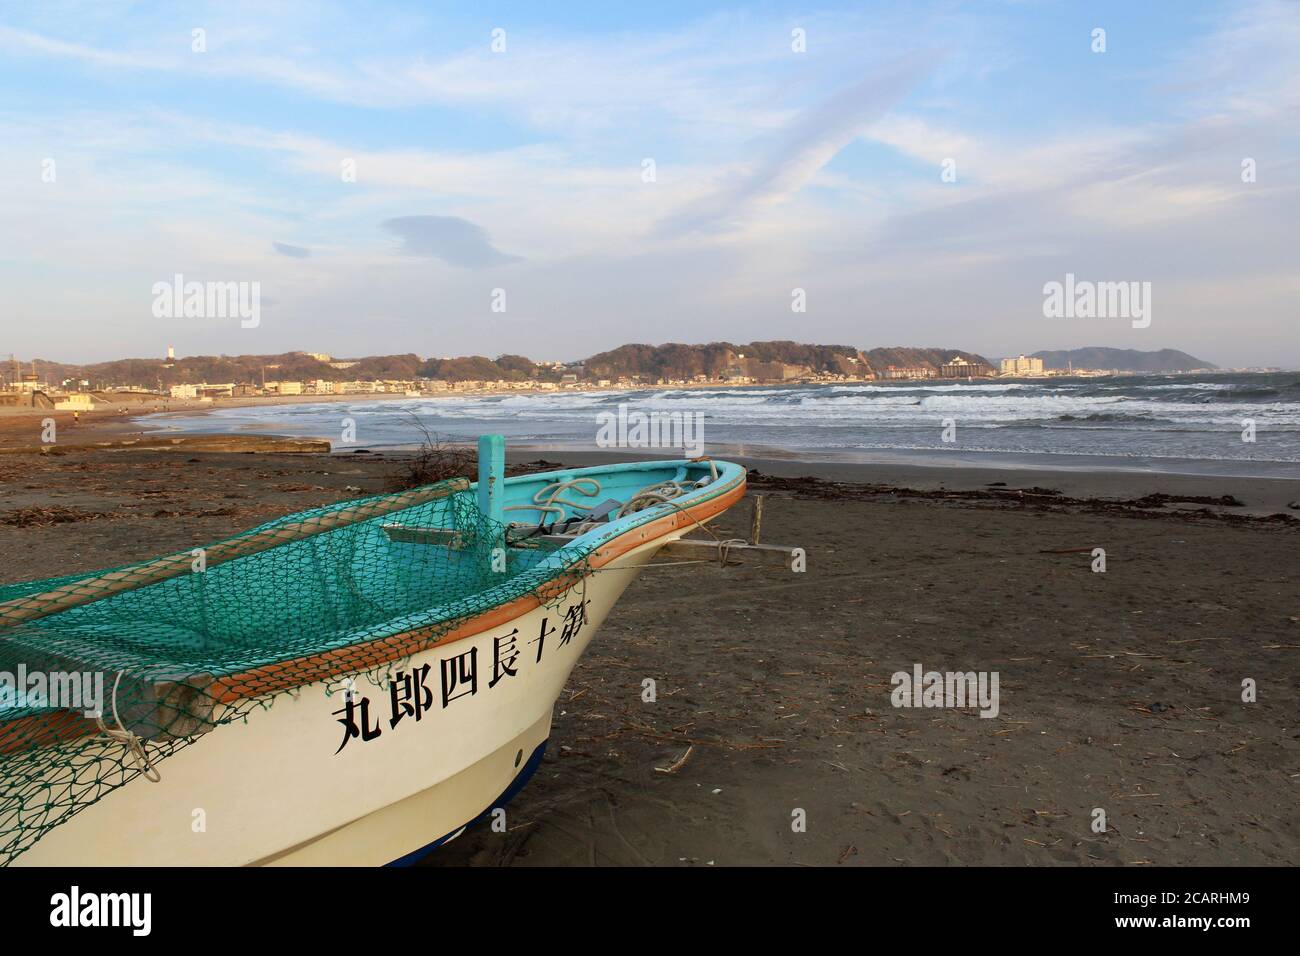 15 March 2018 - Kamakura, Japan: Little fishing boat on cold Kamakura beach. Stock Photo